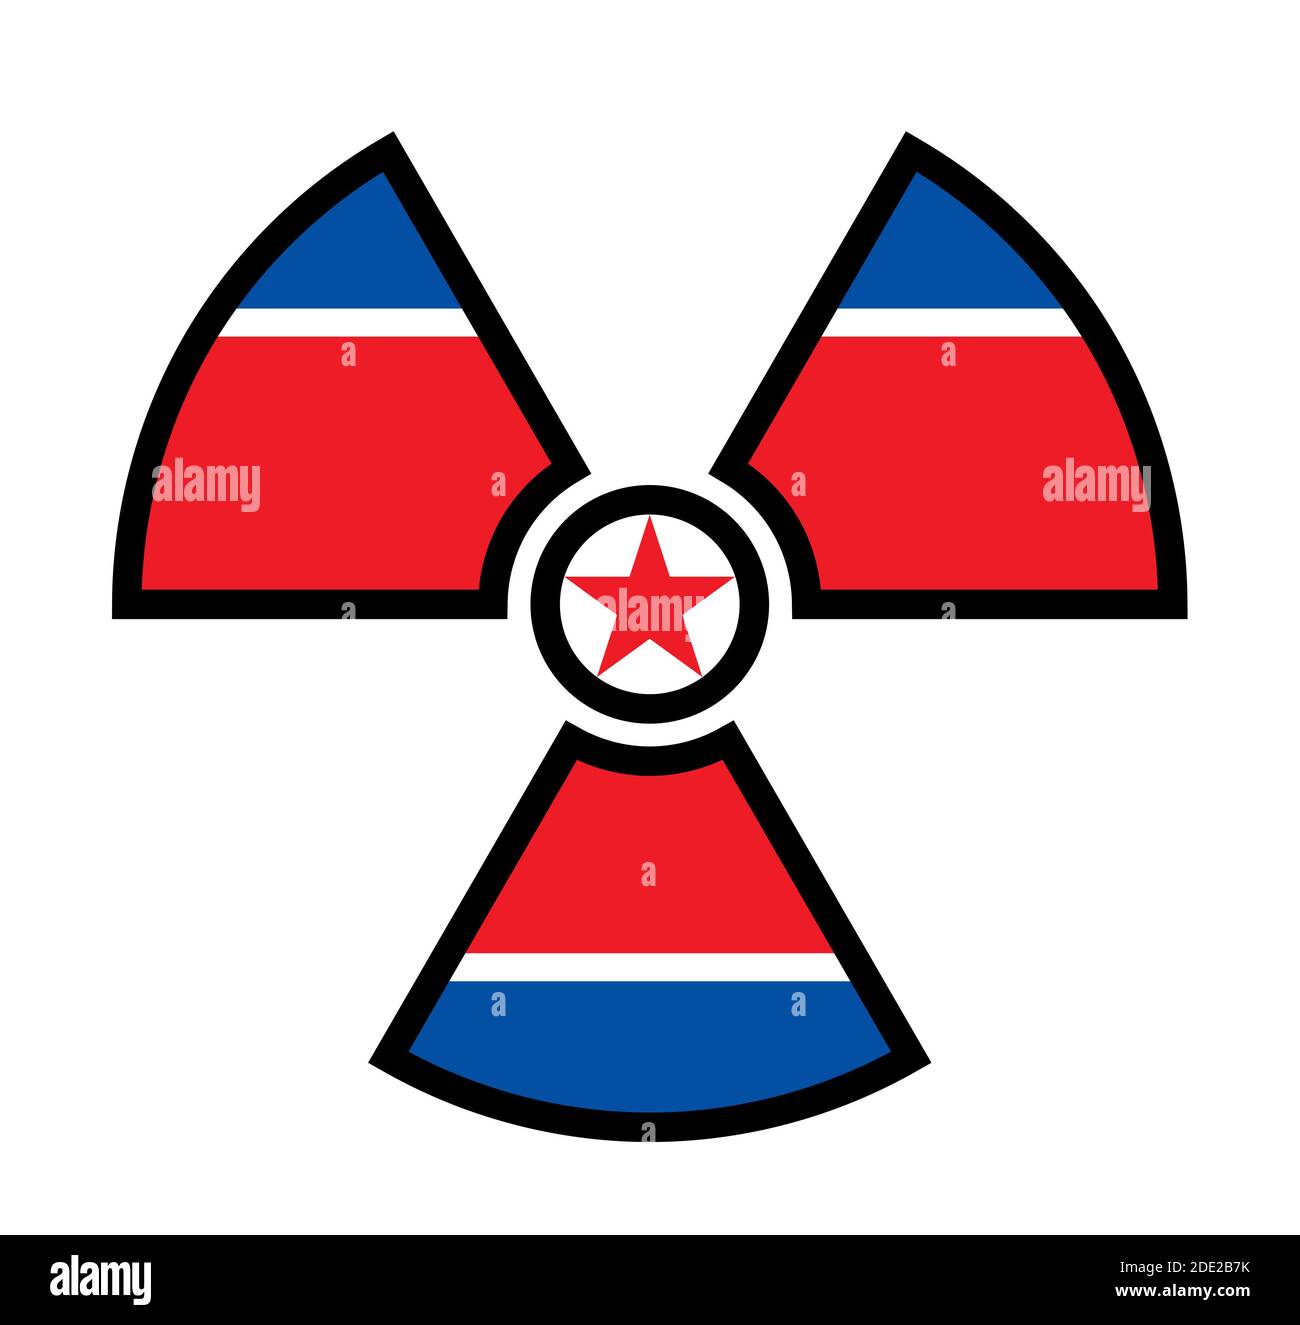 Flagge Nordkoreas als Symbol der Strahlung - Metapher des koreanischen Atom- und Atomprogramms - Macht, Bomben, Waffen, Energie. Stockfoto